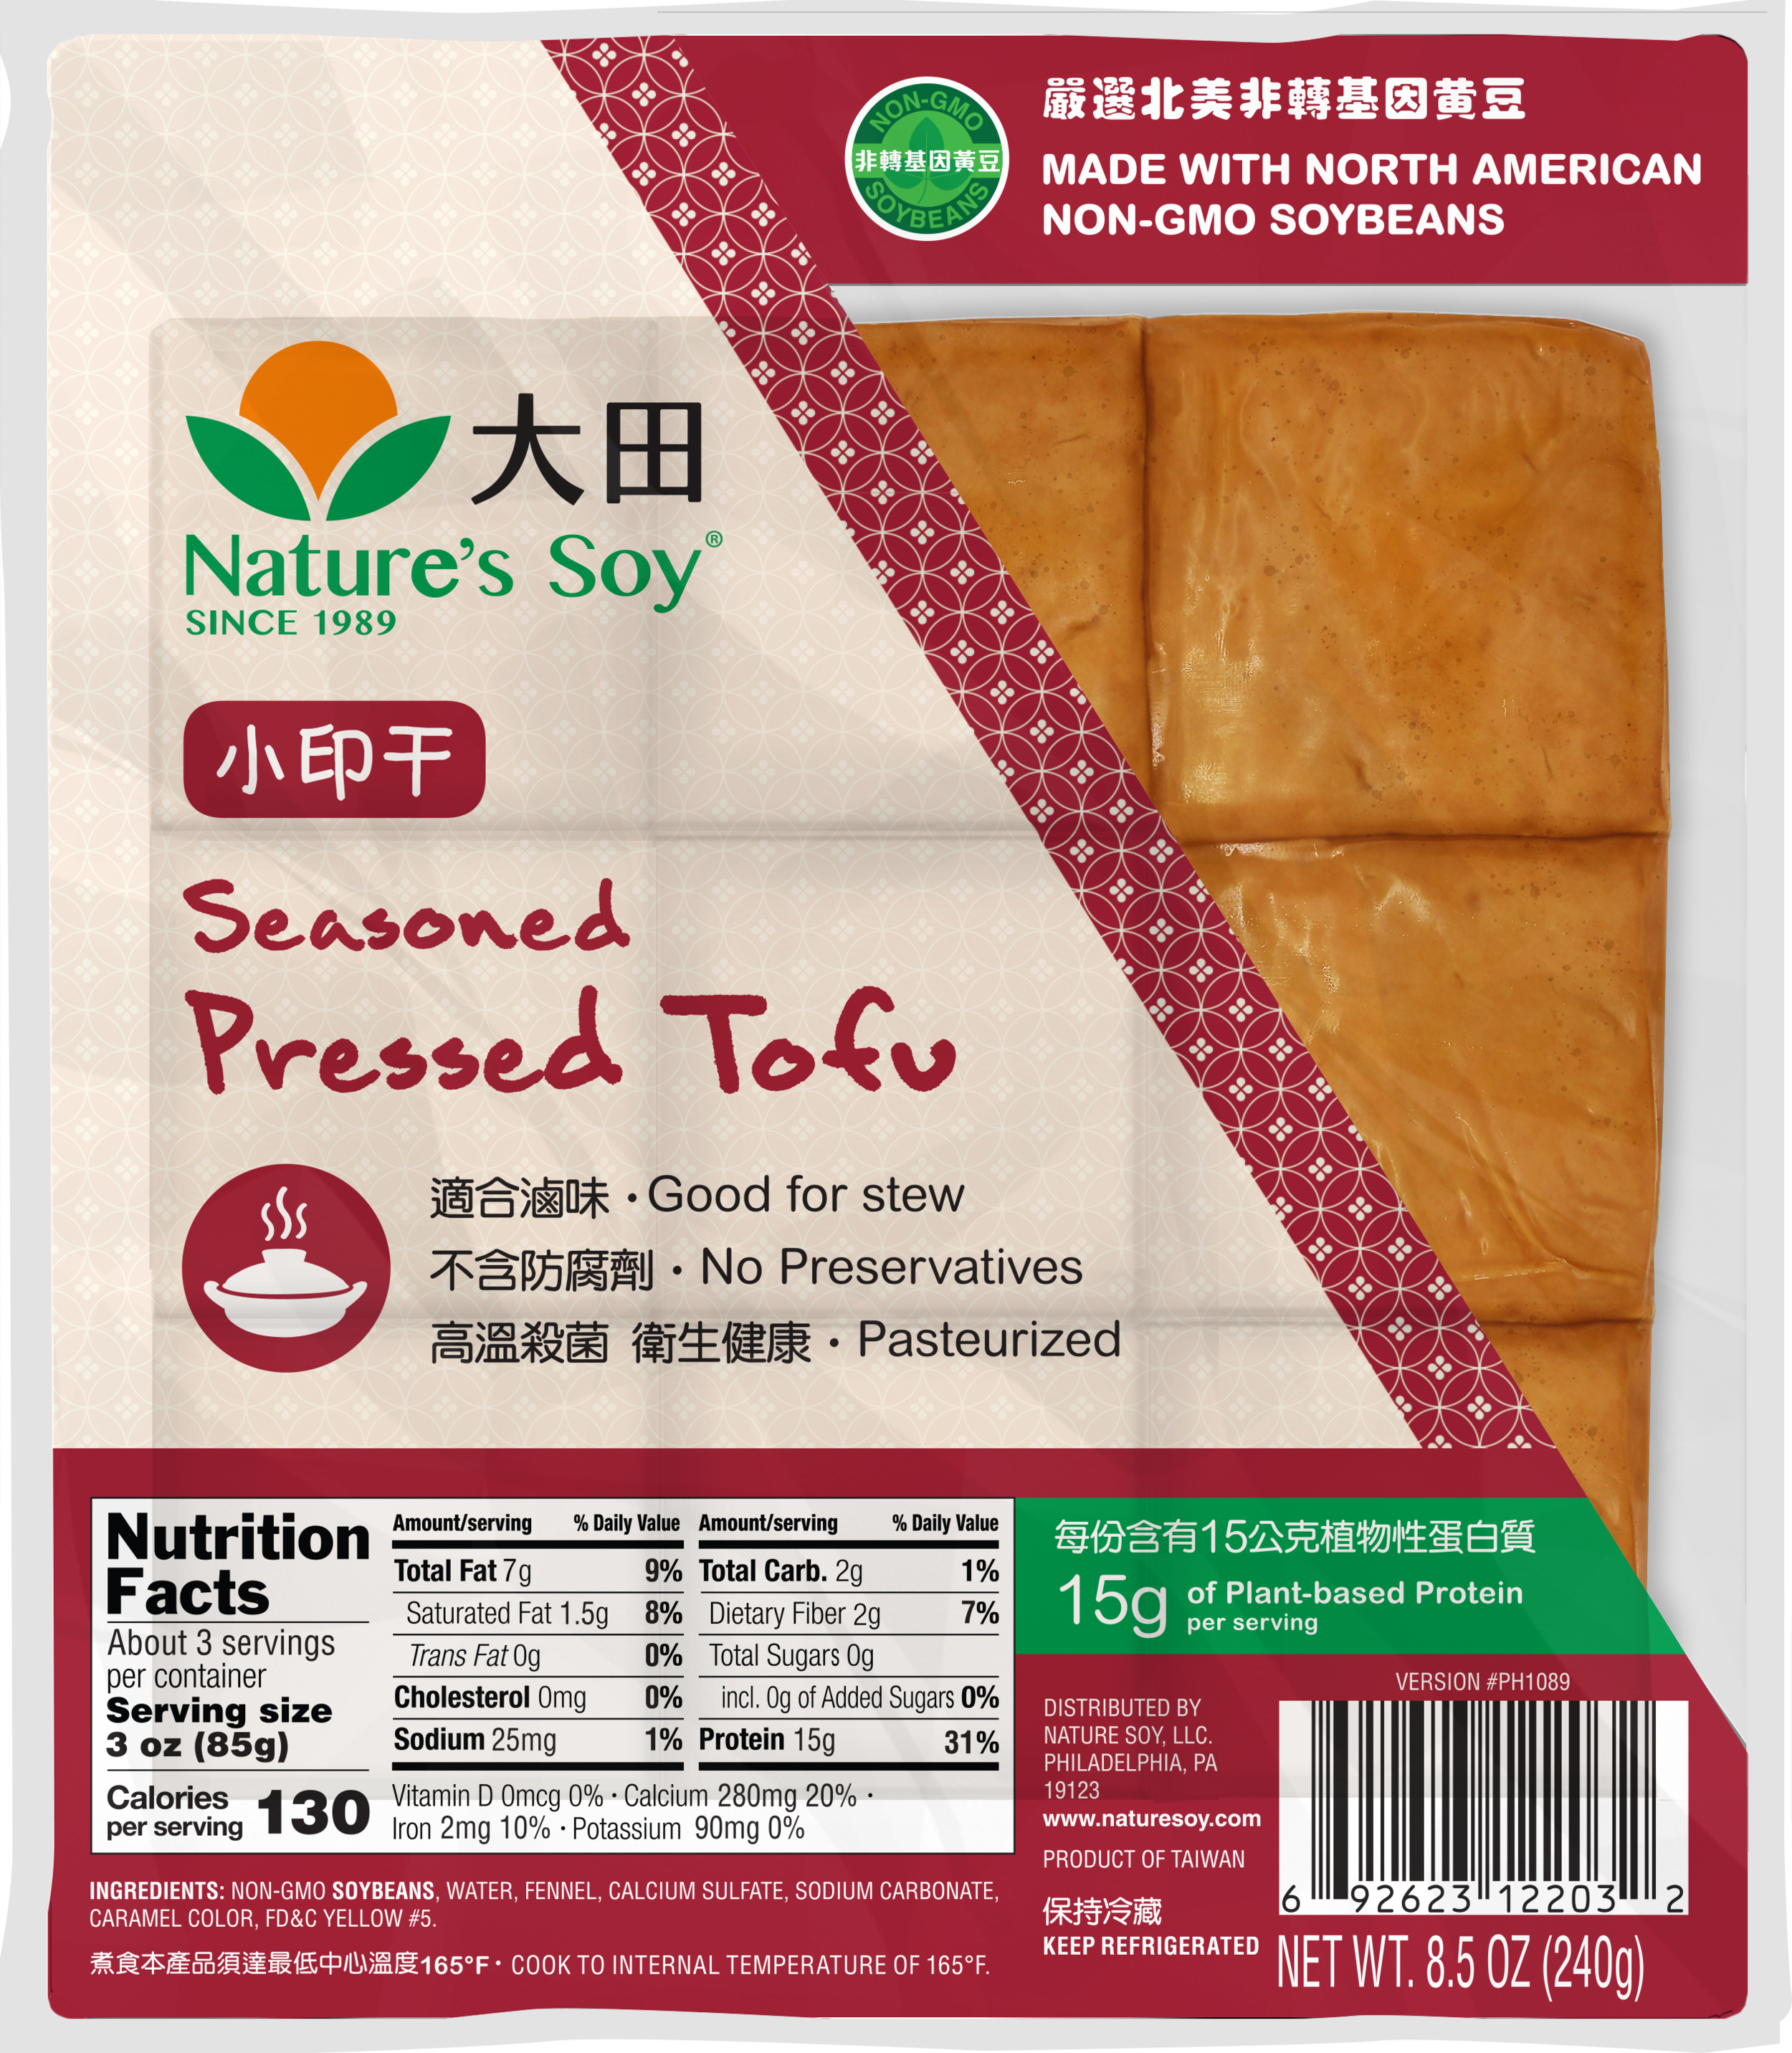 2019-11-07 - Seasoned Pressed Tofu Rendering.png